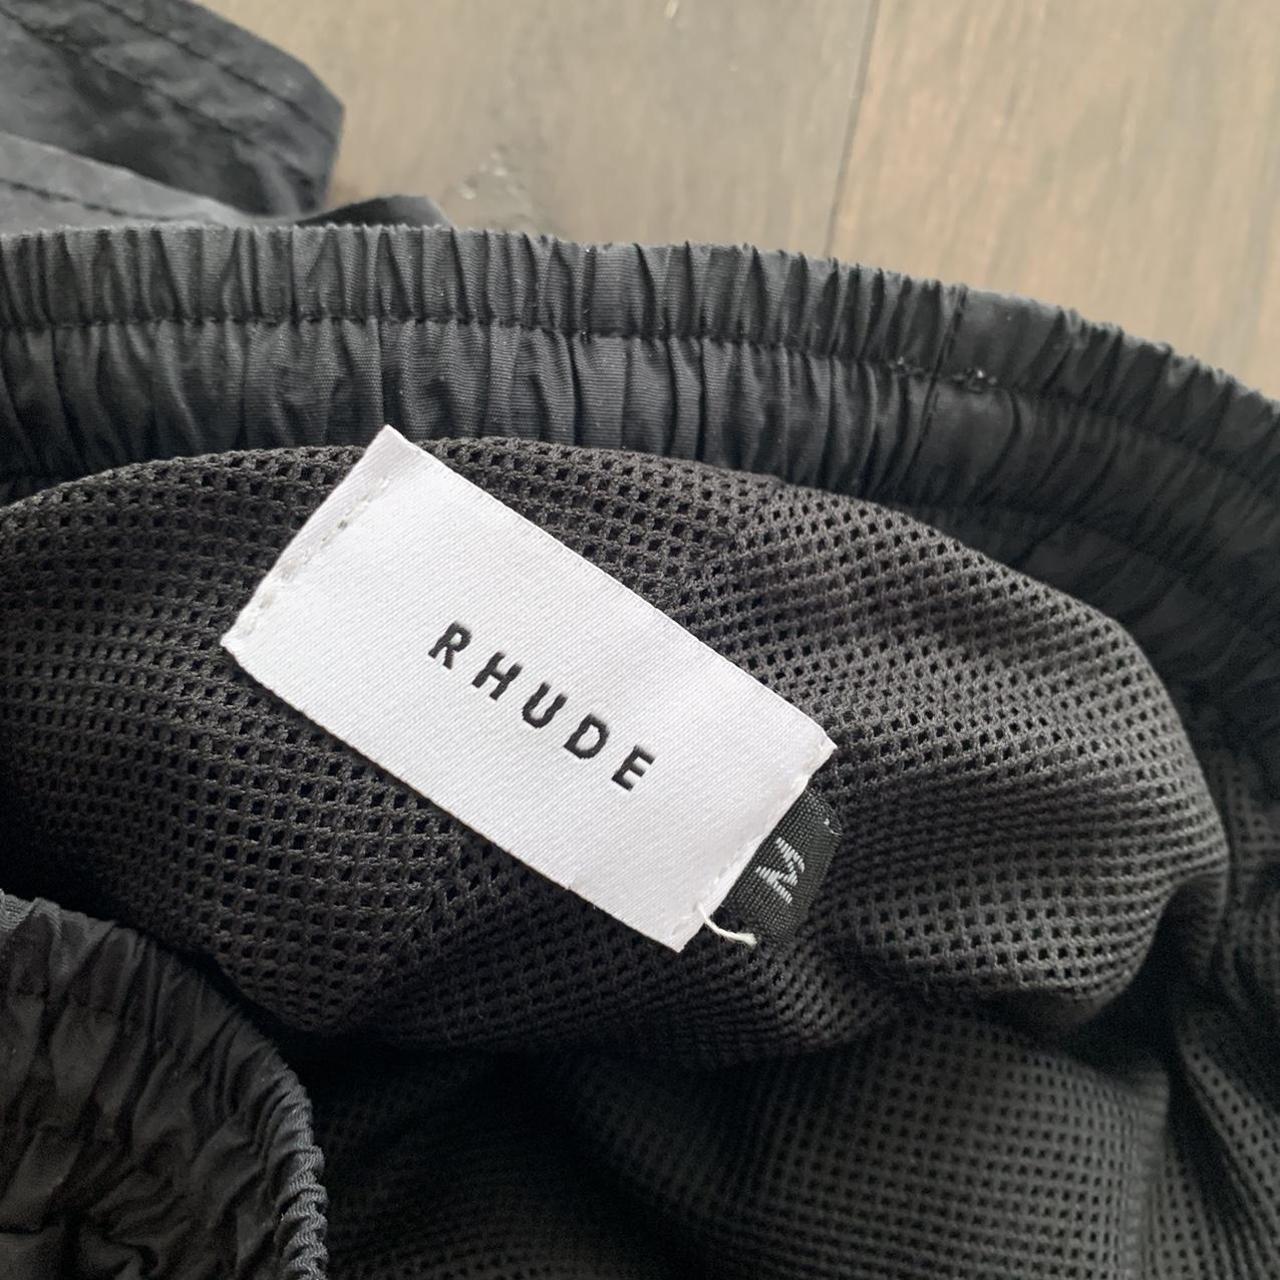 Product Image 3 - Black Rhude logo nylon shorts,